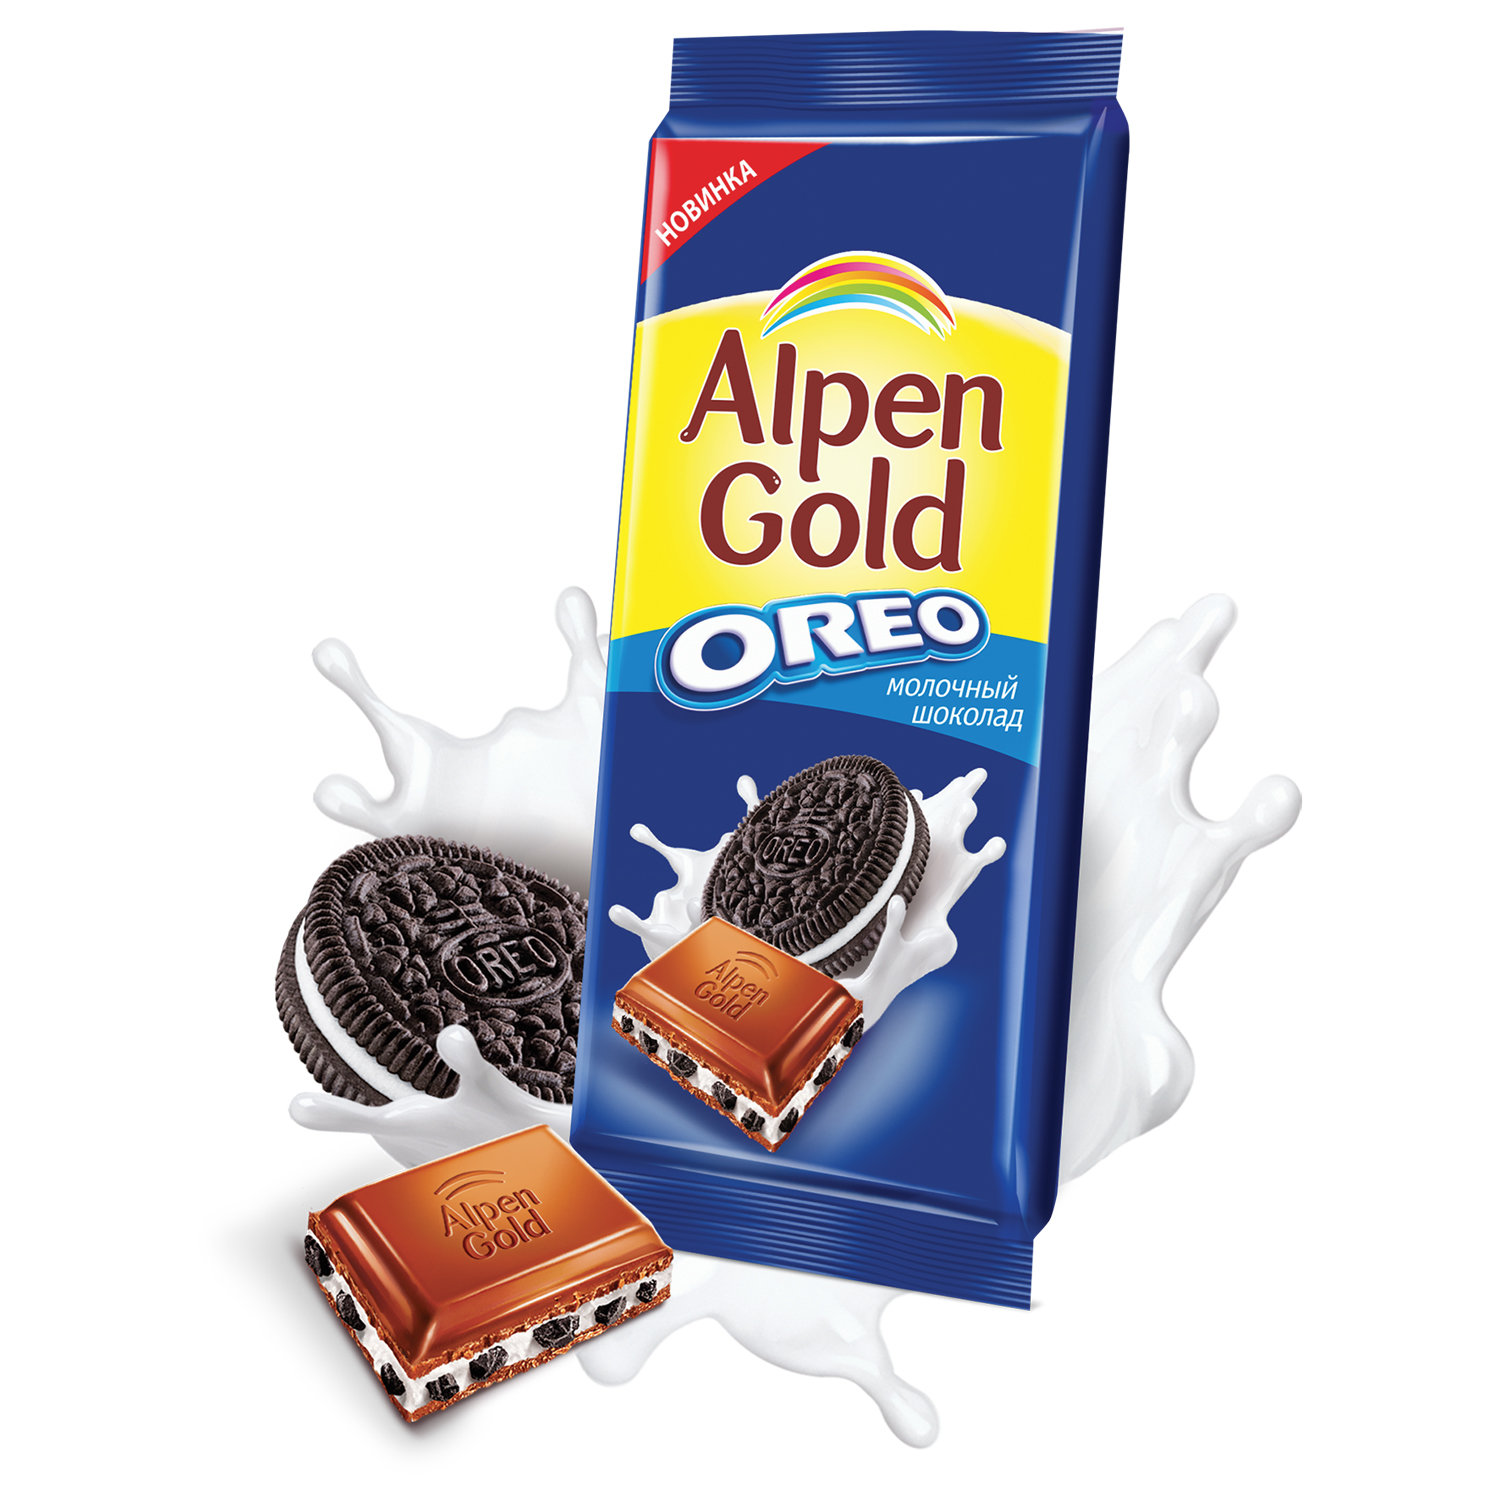 Шоколадка на белом фоне альпен гольд